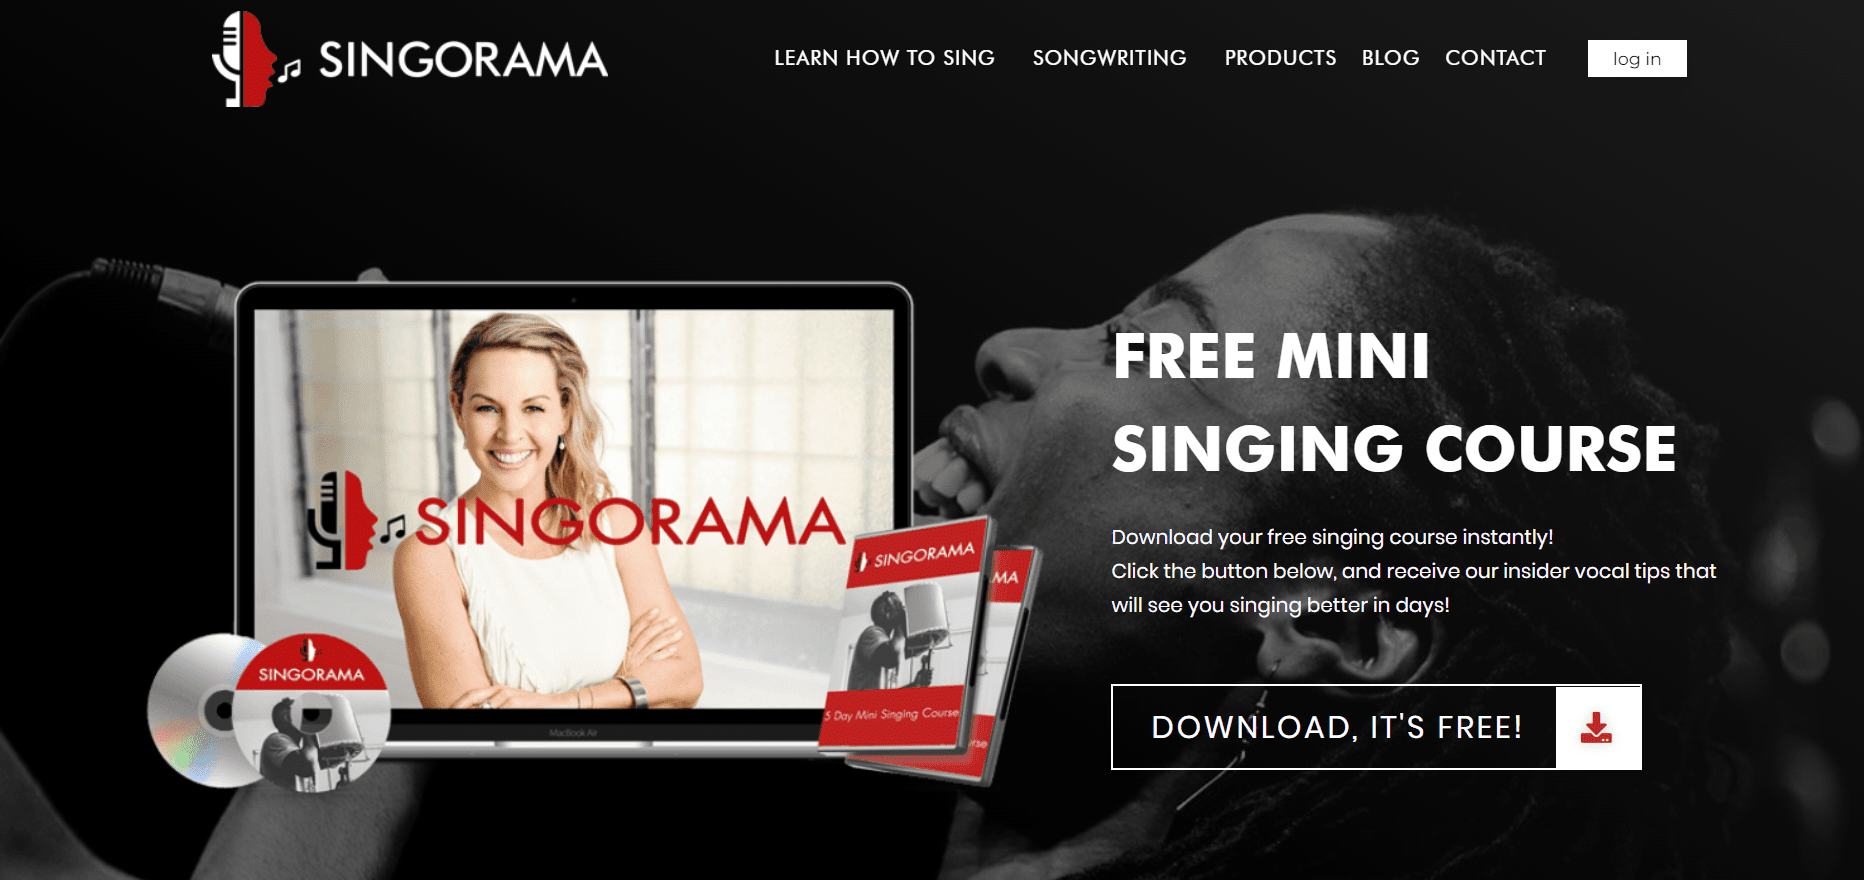 Singorama- Best Music Affiliate Programs